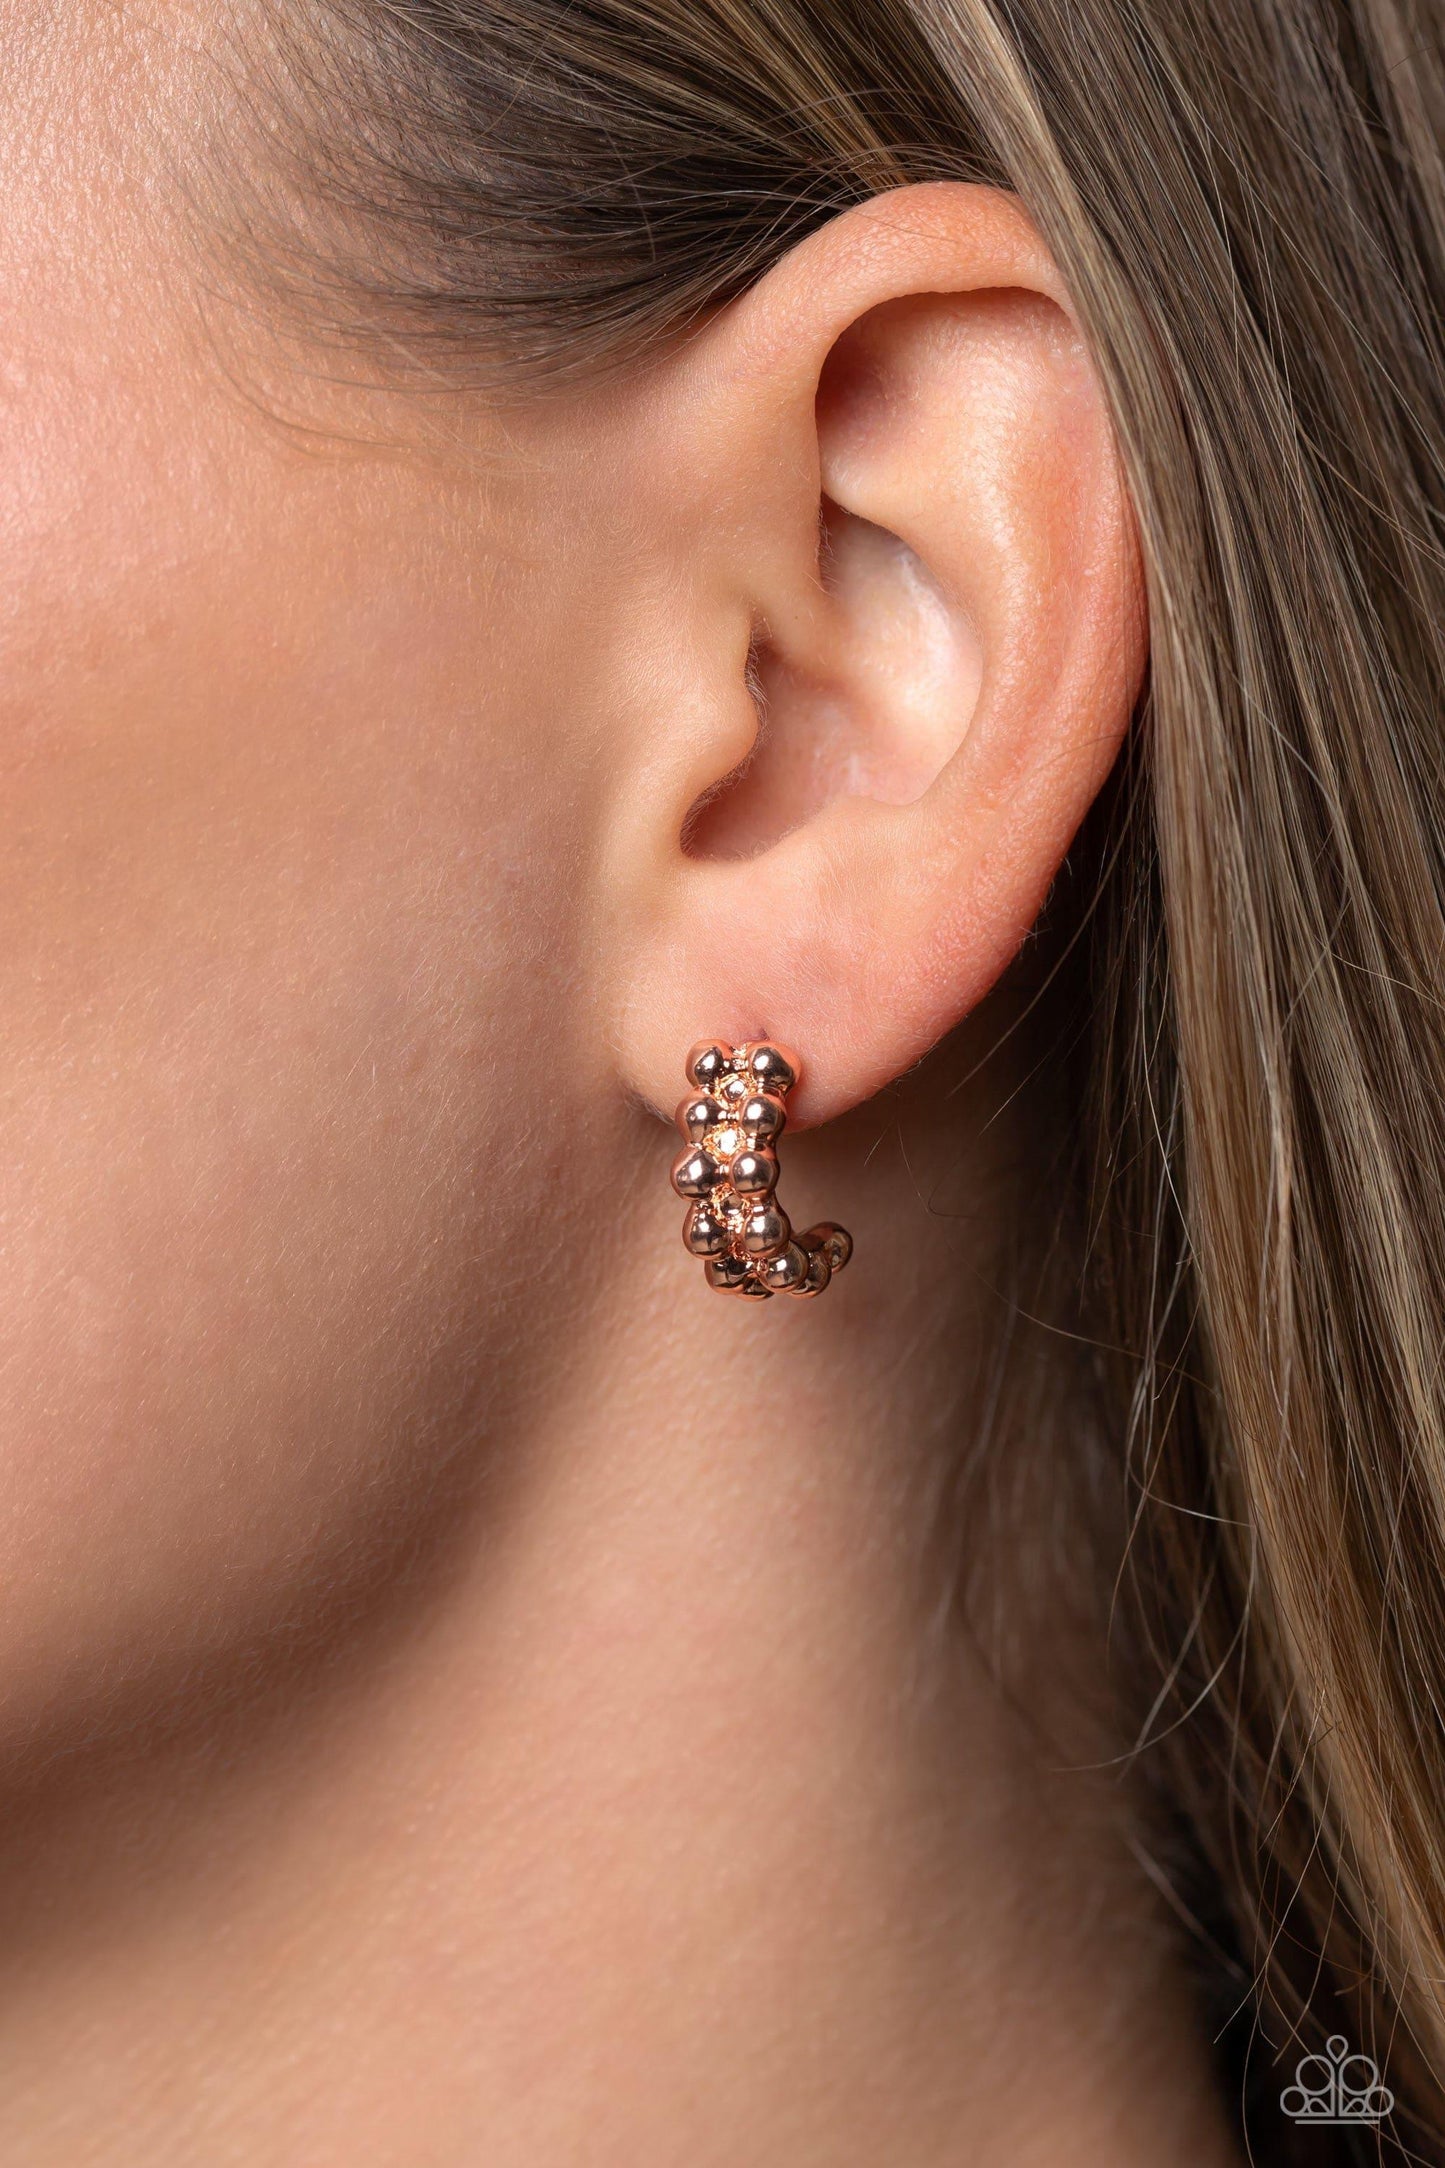 Paparazzi Accessories - Bubbling Beauty - Copper Earrings - Bling by JessieK